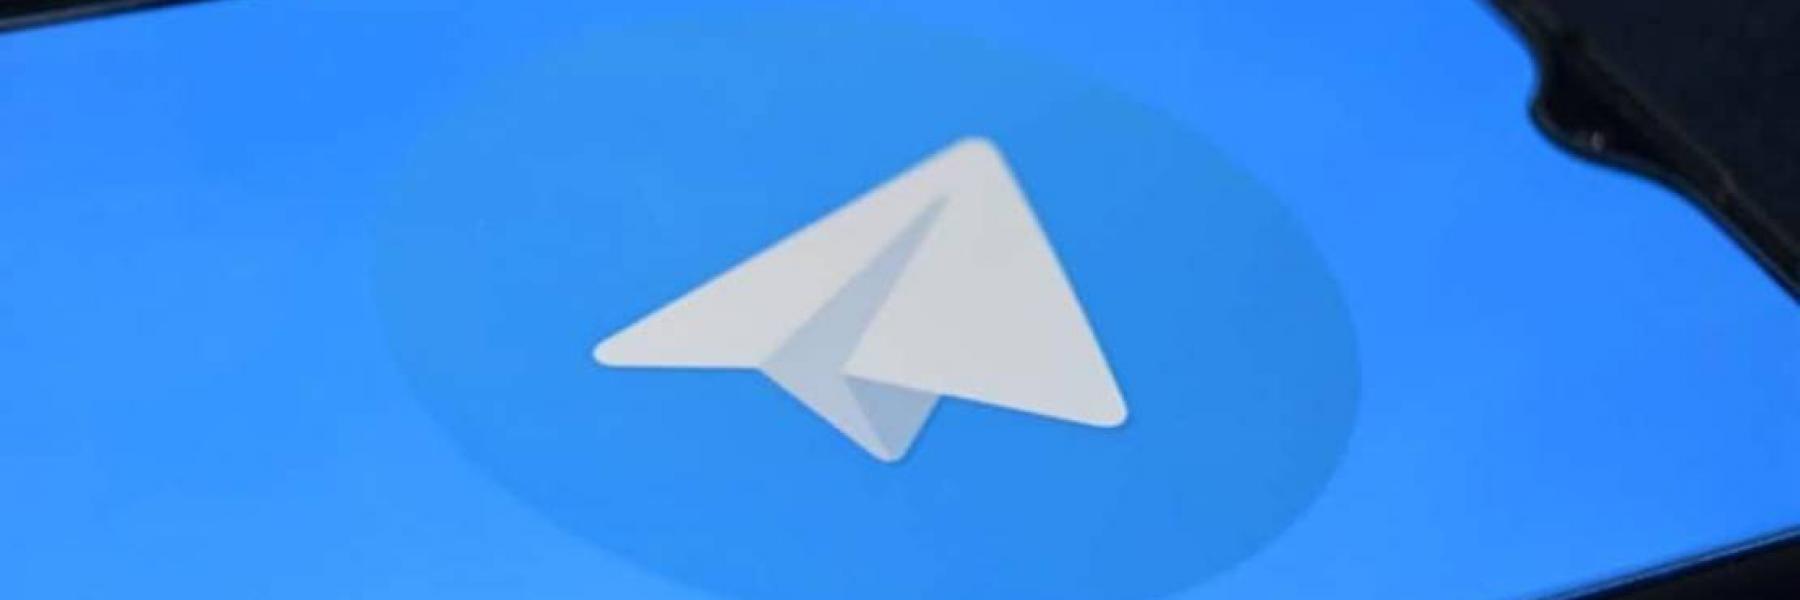 تيليغرام يطلق خدمة مكالمات الفيديو الفردية على أجهزة آبل وأندرويد 